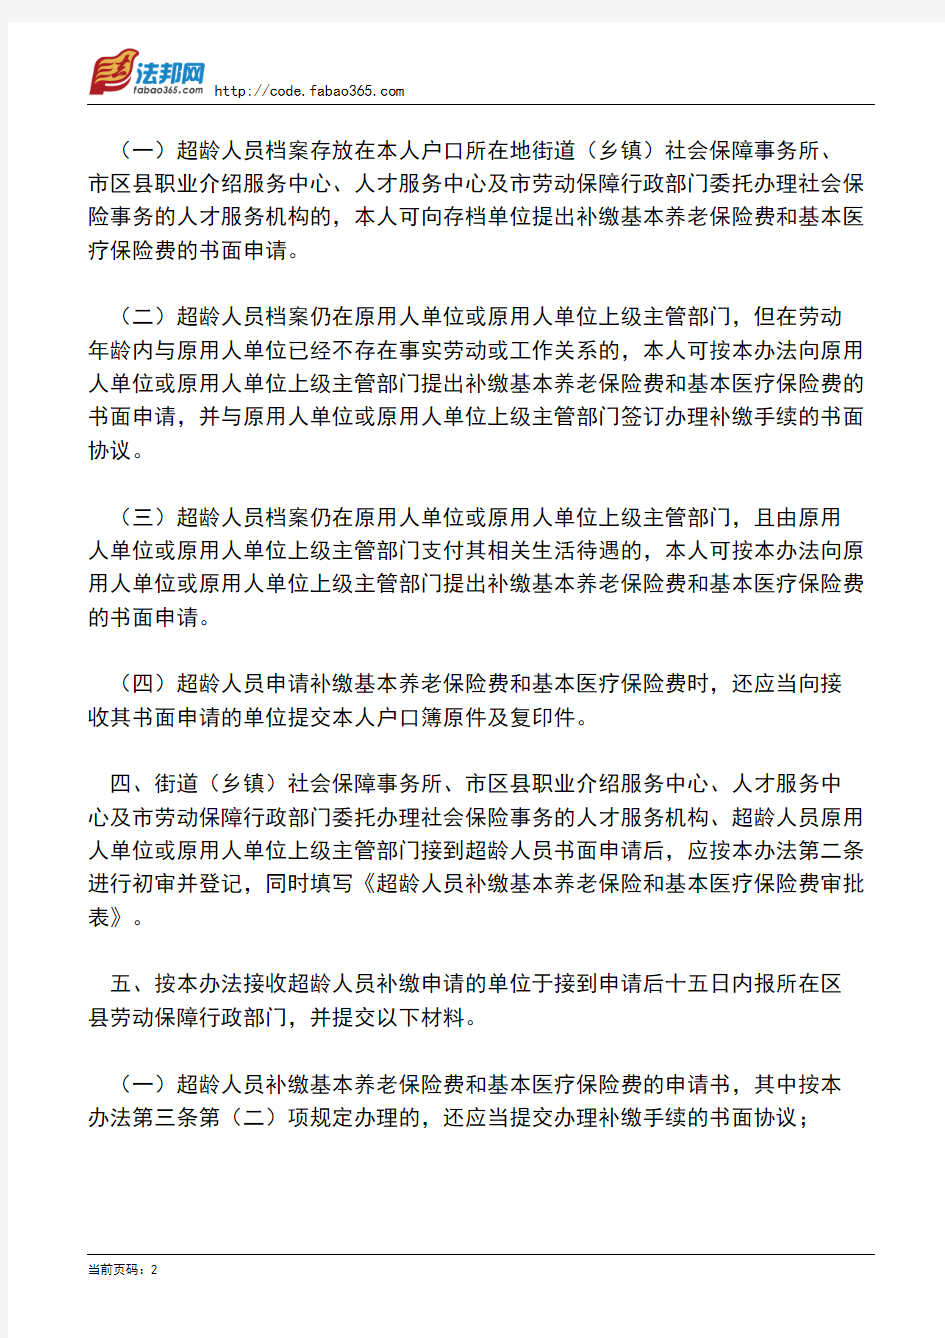 北京市劳动和社会保障局关于超过国家规定劳动年龄的本市城镇人员社会保险有关问题的处理办法